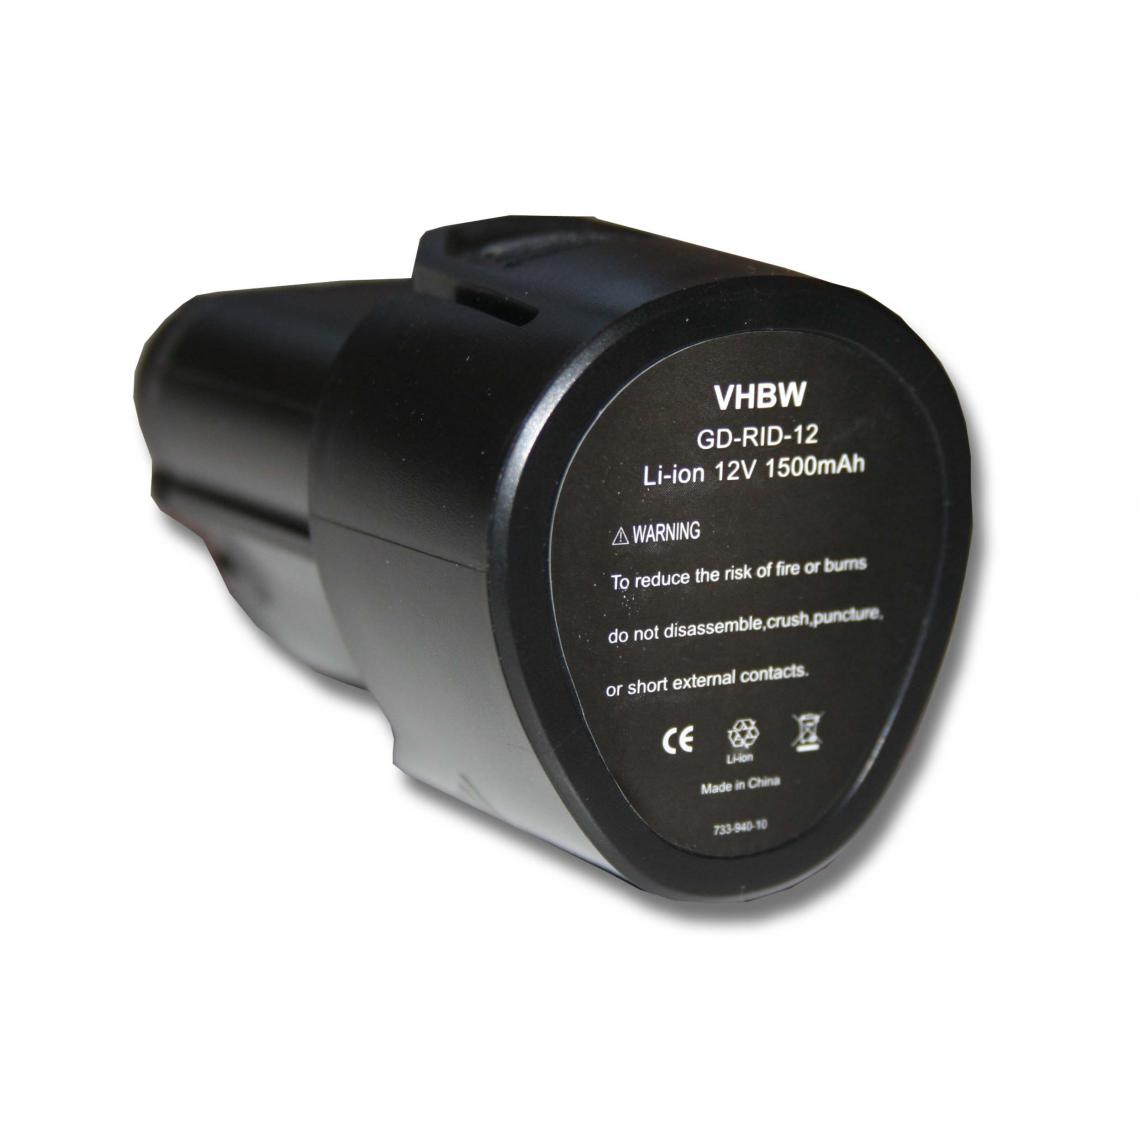 Vhbw - vhbw 1x Batterie remplacement pour Ridgid 200901009, 200901019, R86048 pour outil électrique (1500 mAh, Li-ion, 12 V) - Accessoires vissage, perçage